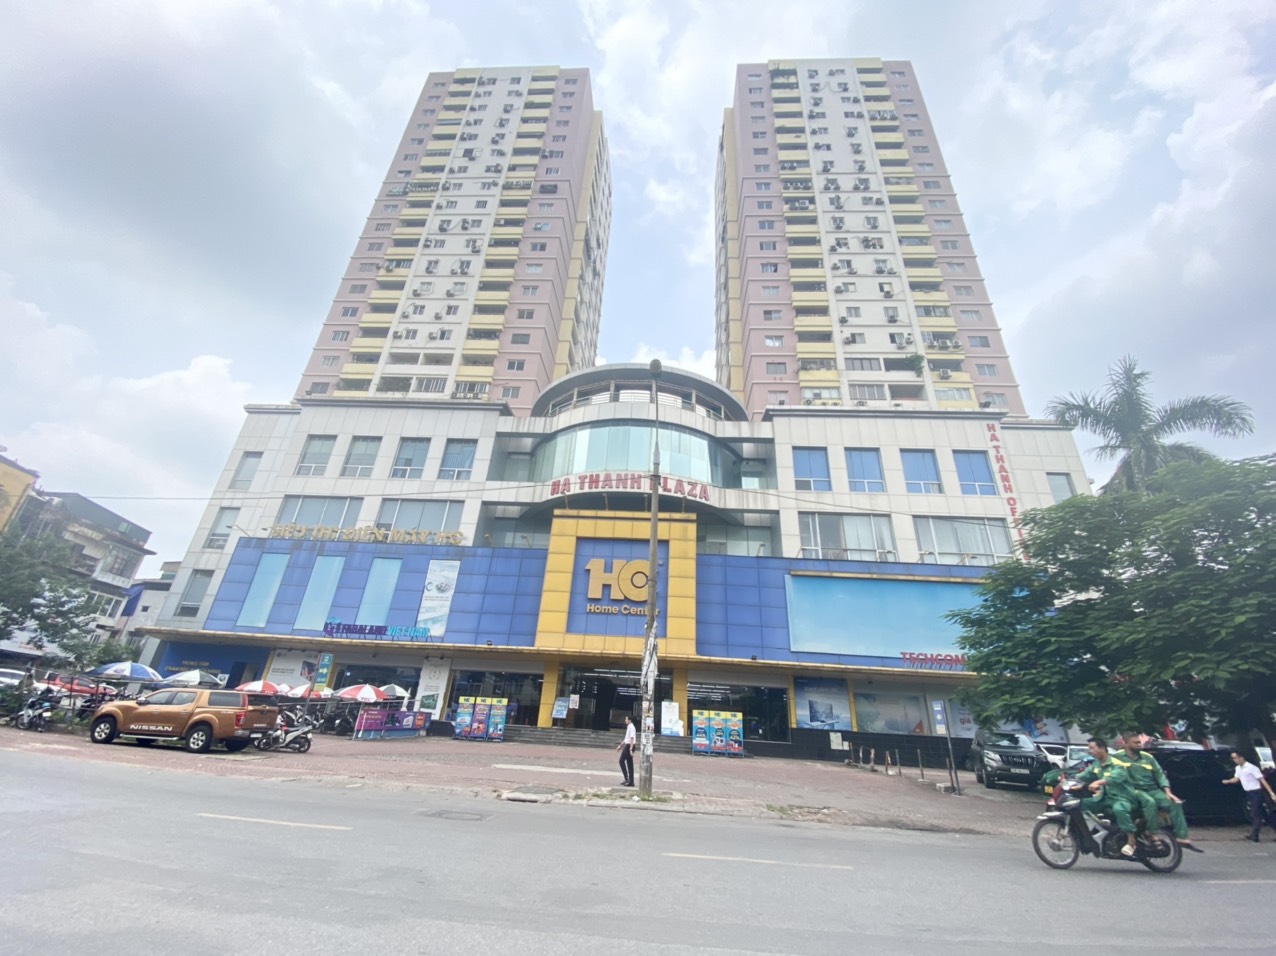 💥Bán gấp chung cư Hà Thành Plaza 102 Thái Thịnh 68m, 2PN, mặt phố tiện ích, 2.95 tỷ💥 13901602